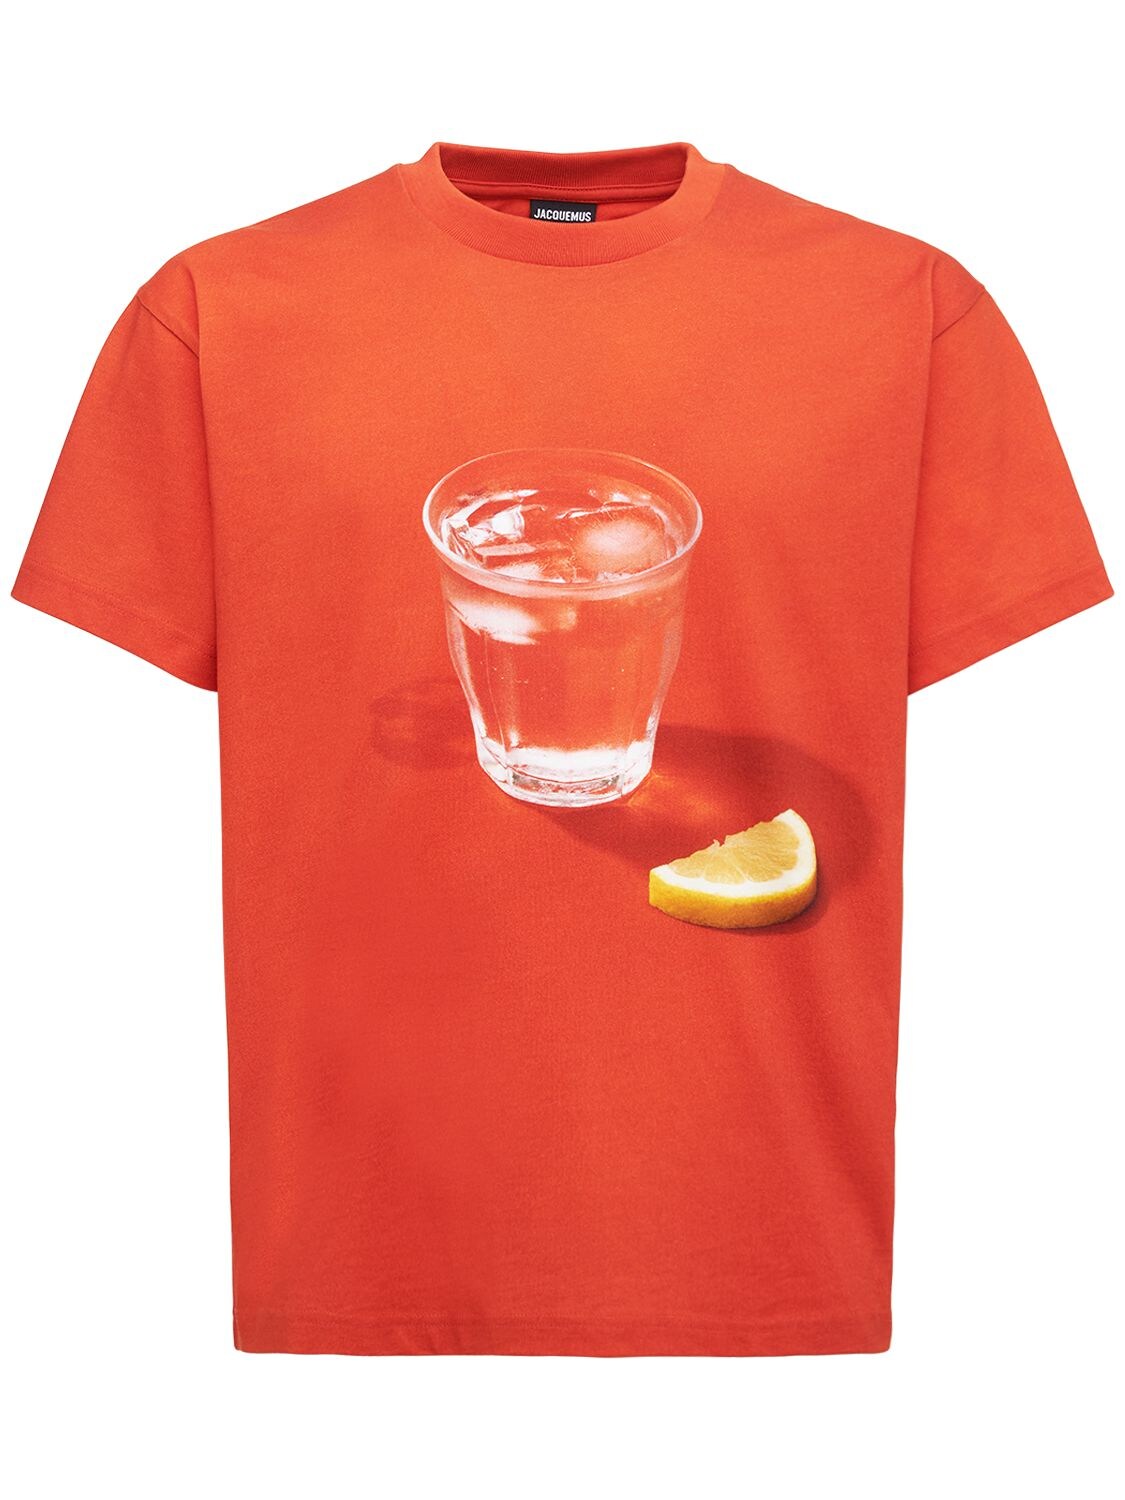 Le Orange Cotton Jersey T-shirt